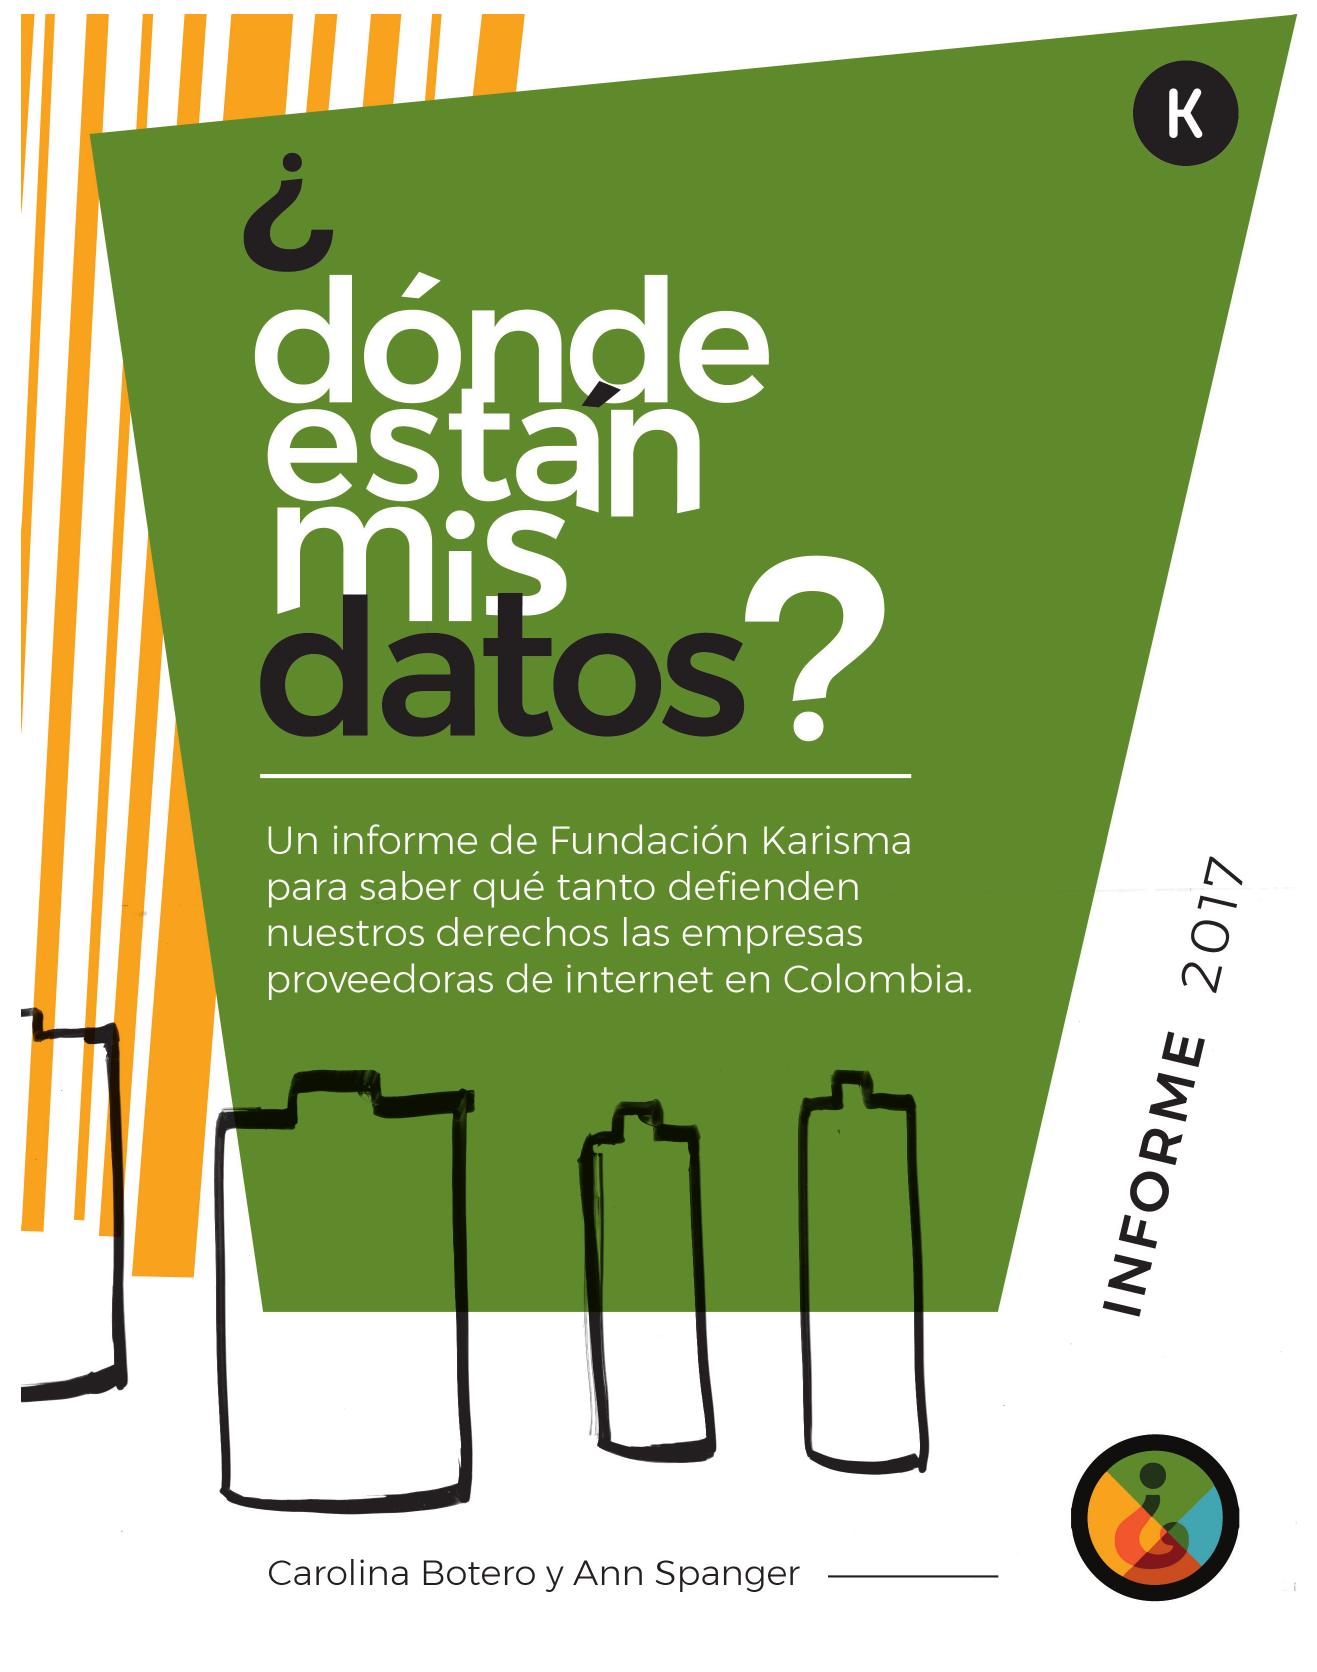 Informe ¿Dónde están mis Datos? 2017 :: Un informe de la Fundación Karisma para saber cuánto defienden nuestros derechos las empresas proveedoras de internet en Colombia